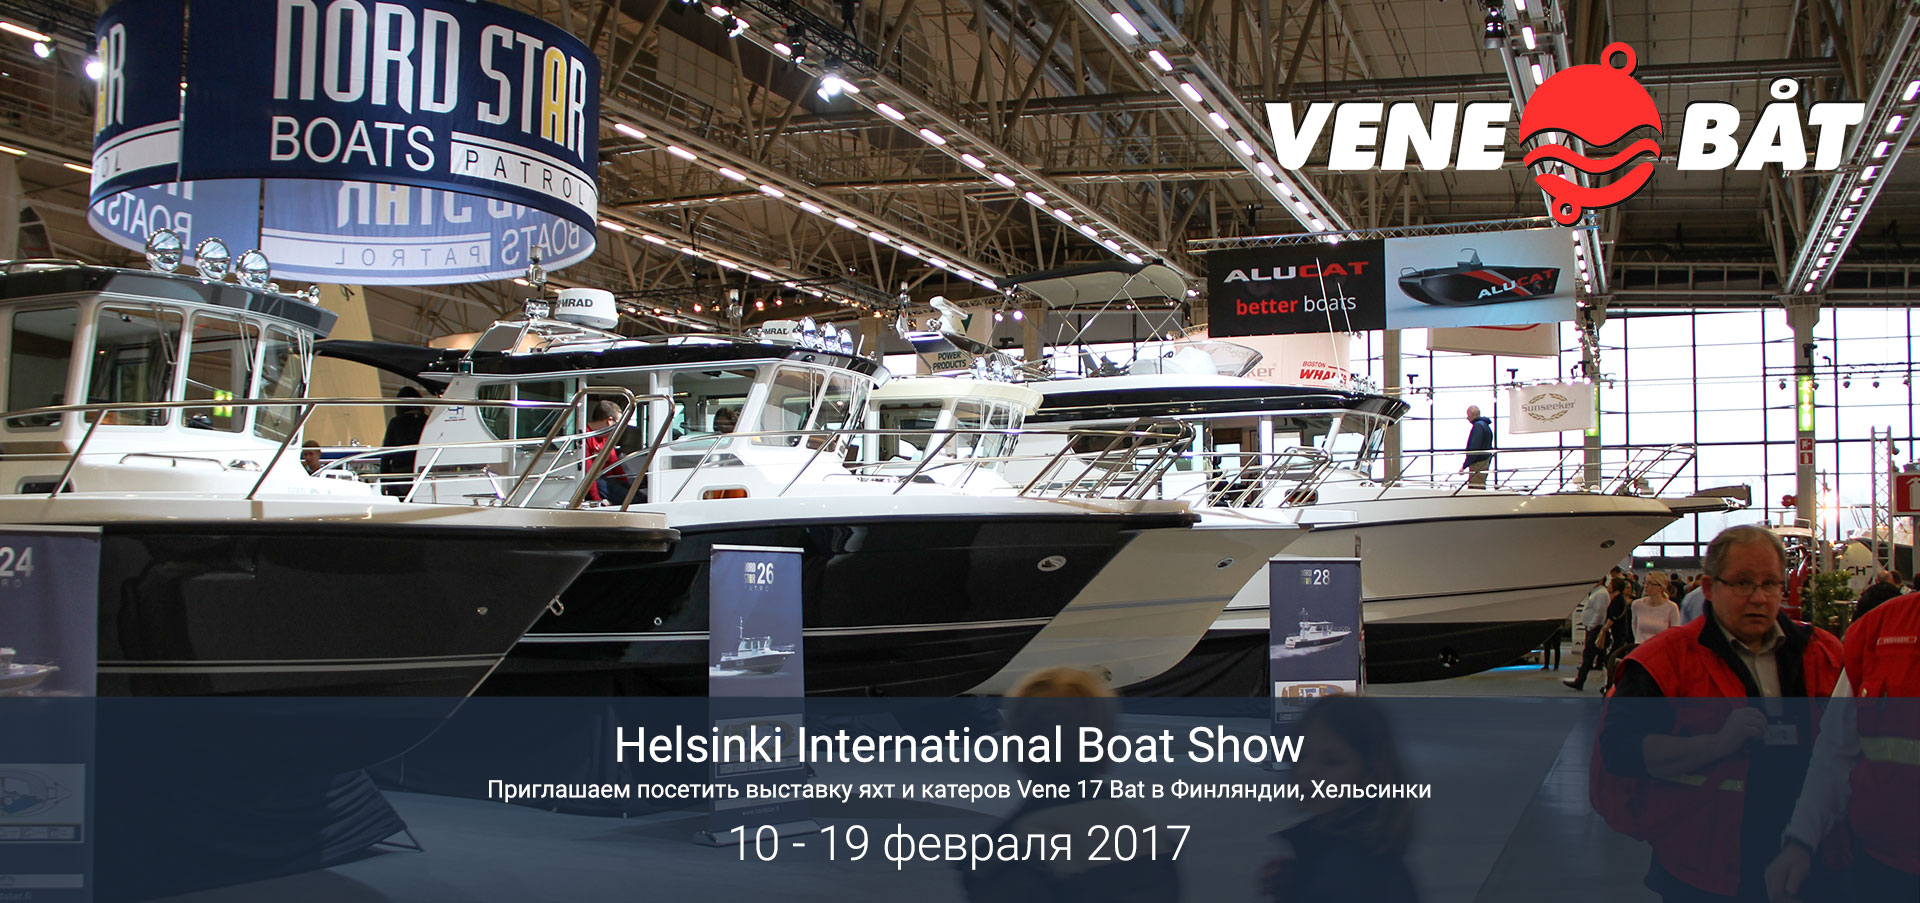 Выставка яхт и катеров Vene 17 Bat в Хельсинки